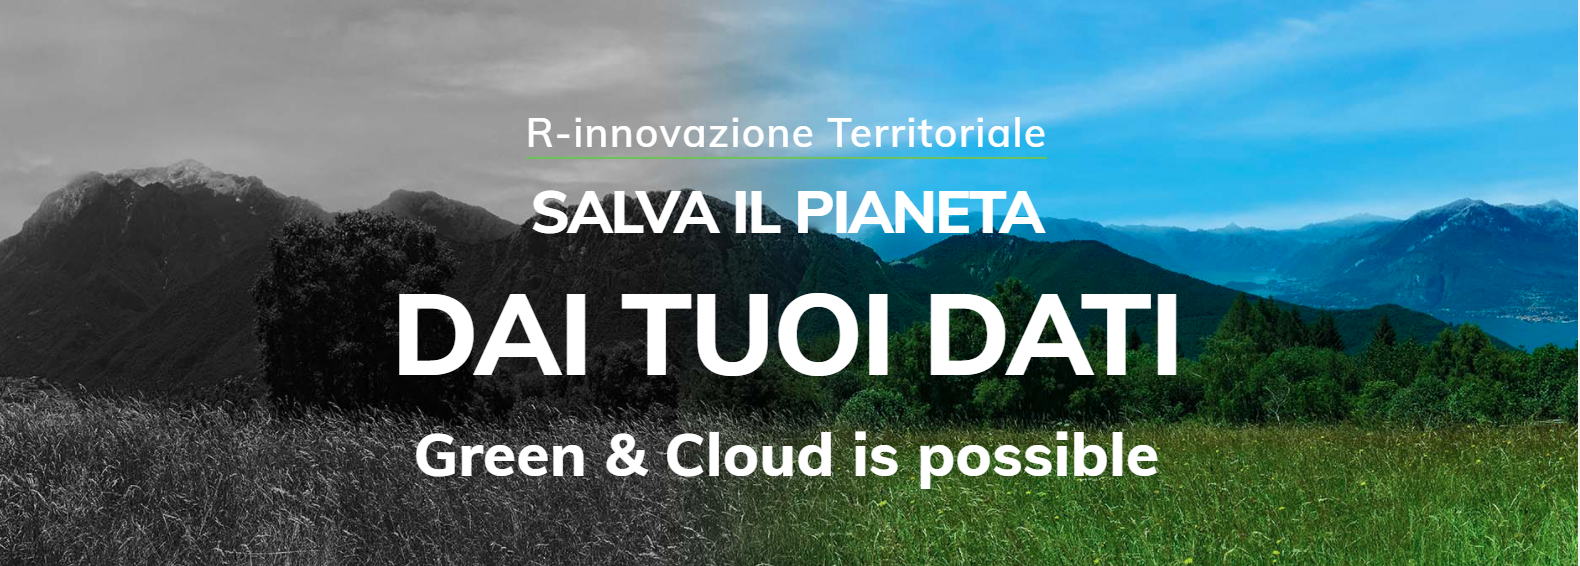 Opiquad-salva-il-pianeta-dai-tuoi-dati-green-cloud-is-possible Data center cloud